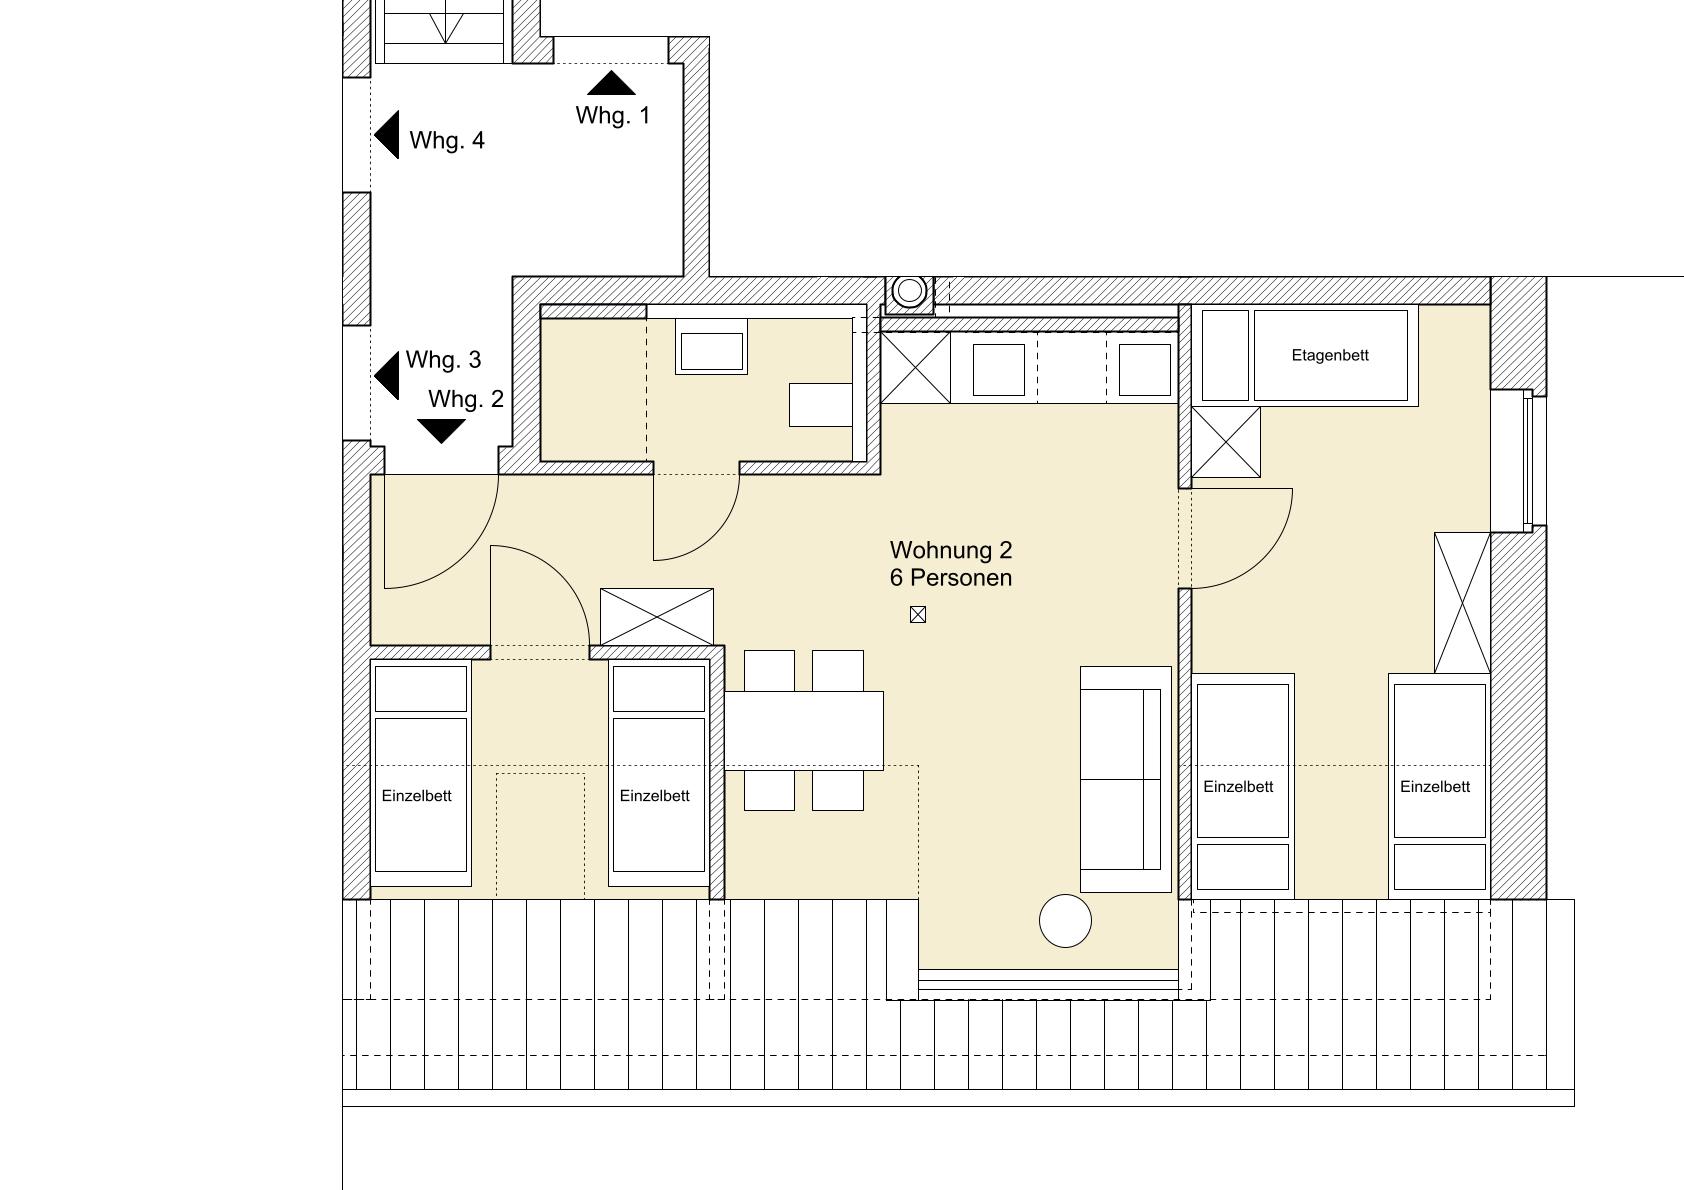  Wohnung 2 (6-7 Personen, 48 m²):